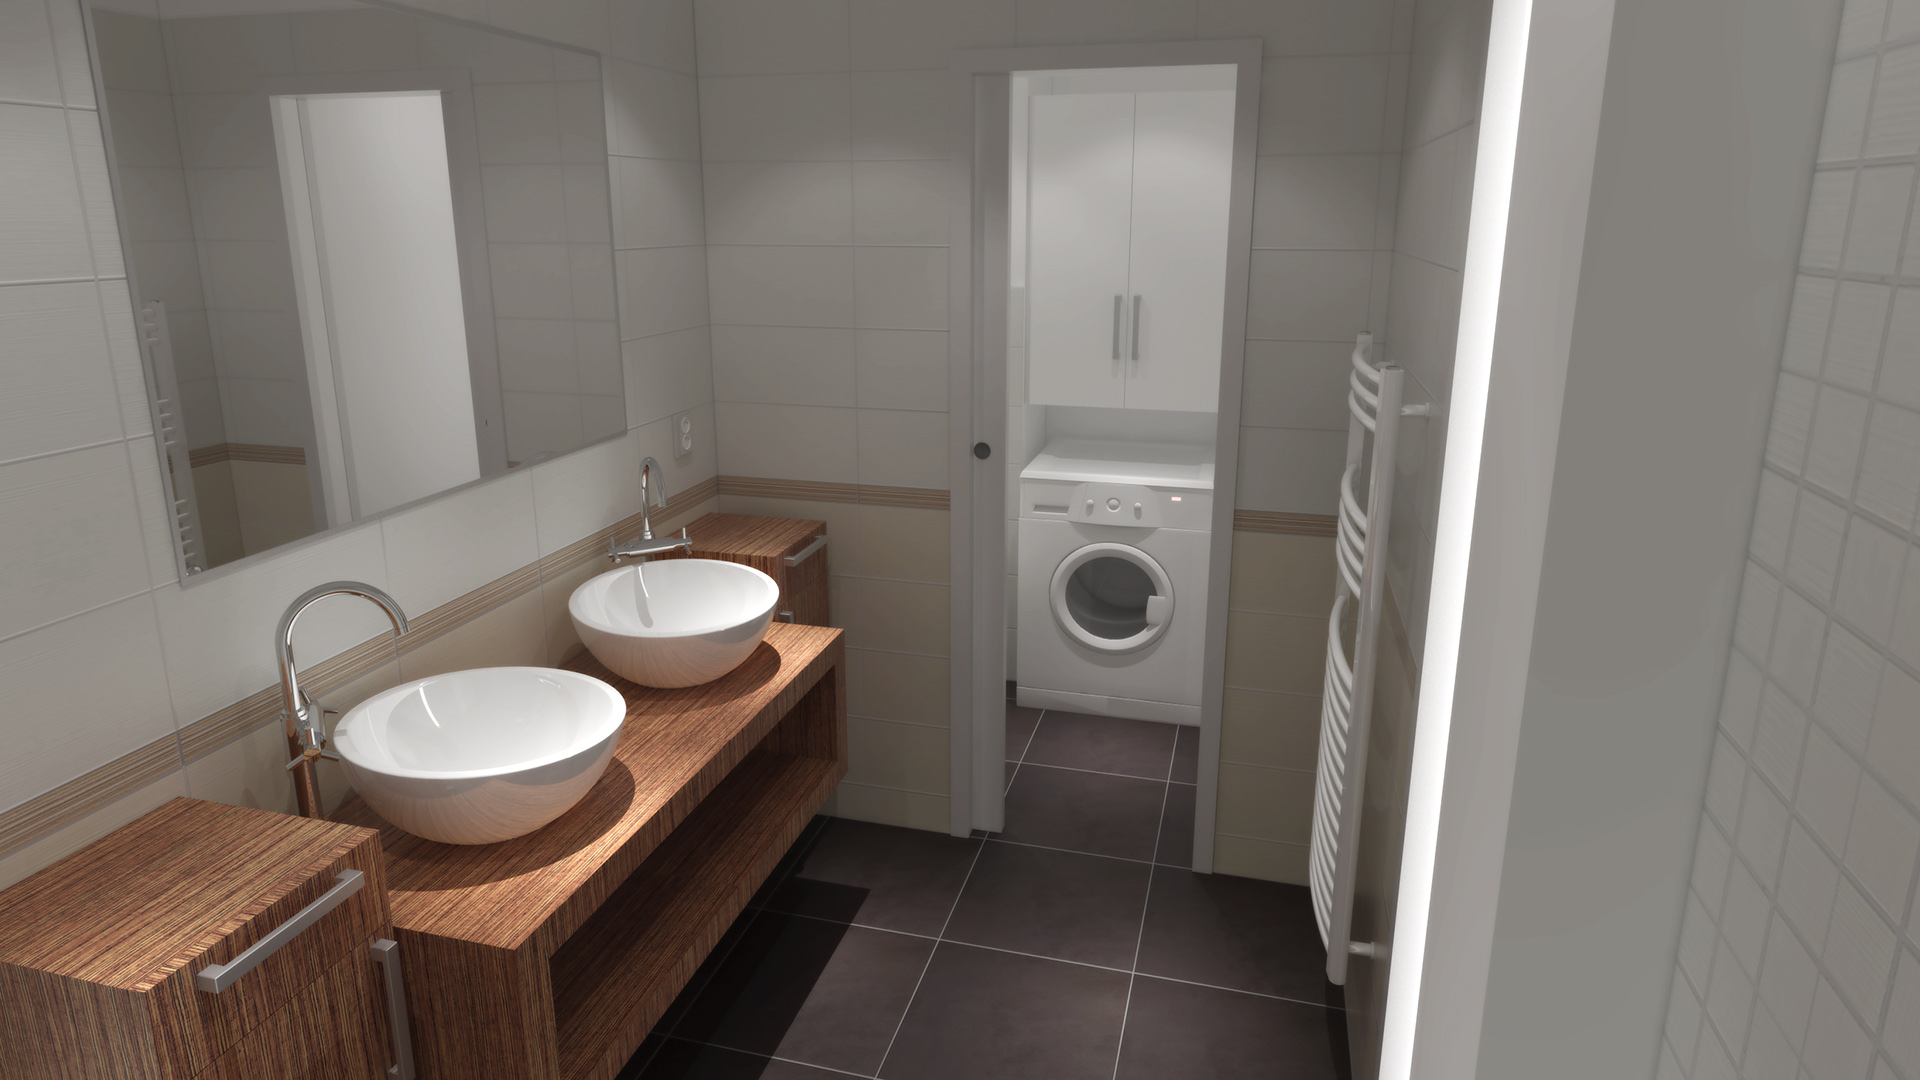 Celková rekonstrukce bytu v Praze v Bráníku. Změna dispozice koupelny a toalety umožnila zvětšit prostor celé koupelny a zároveň oddělit dveřma prostor toalety s pračkou v nice. Doba realizace